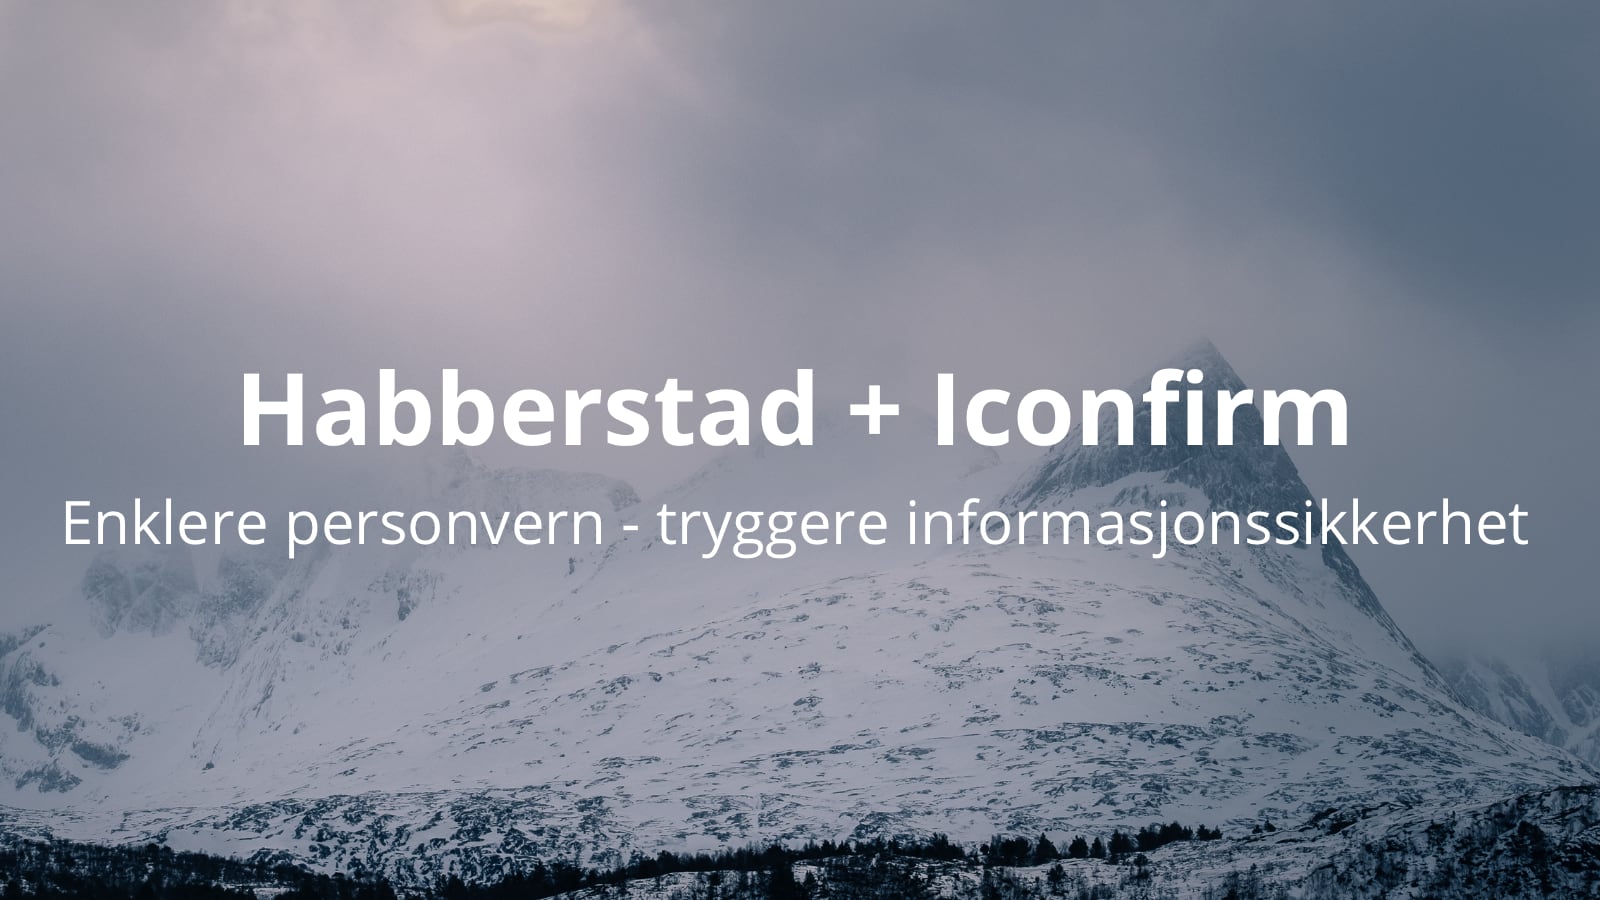 Enklere personvern og tryggere informasjonssikkerhet med Habberstad og Iconfirm